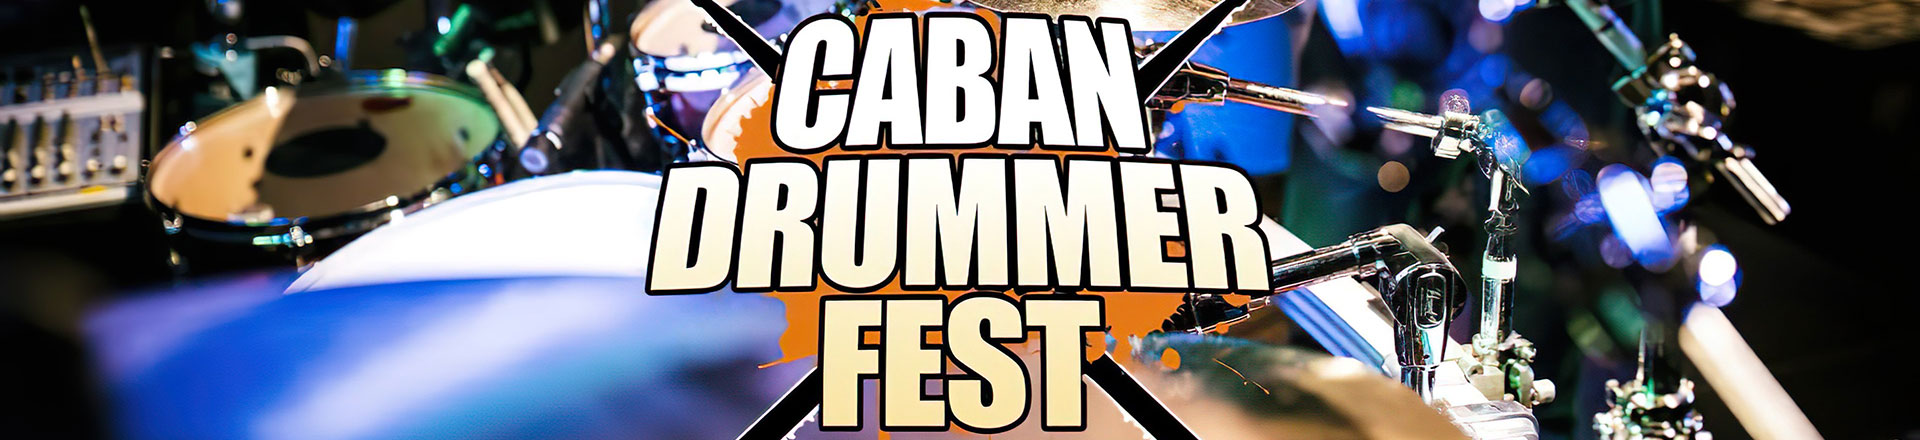 Caban Drummer Fest 2021 juz 25 września w Chrzanowie